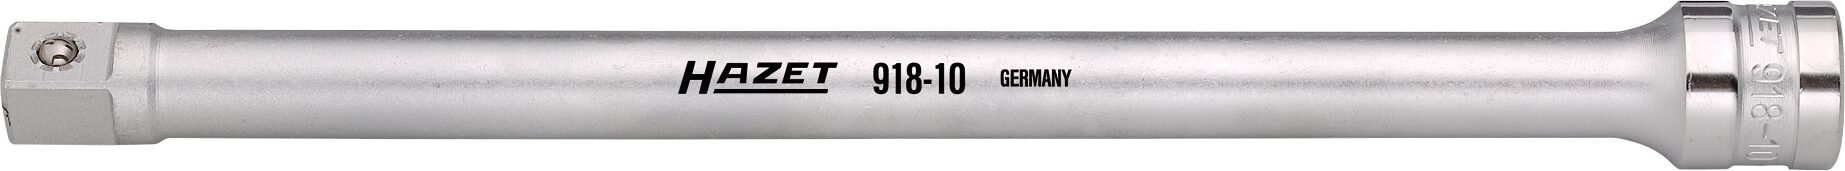 HAZET Verlängerung 918-10 · Vierkant hohl 12,5 mm (1/2 Zoll) · Vierkant massiv 12,5 mm (1/2 Zoll)